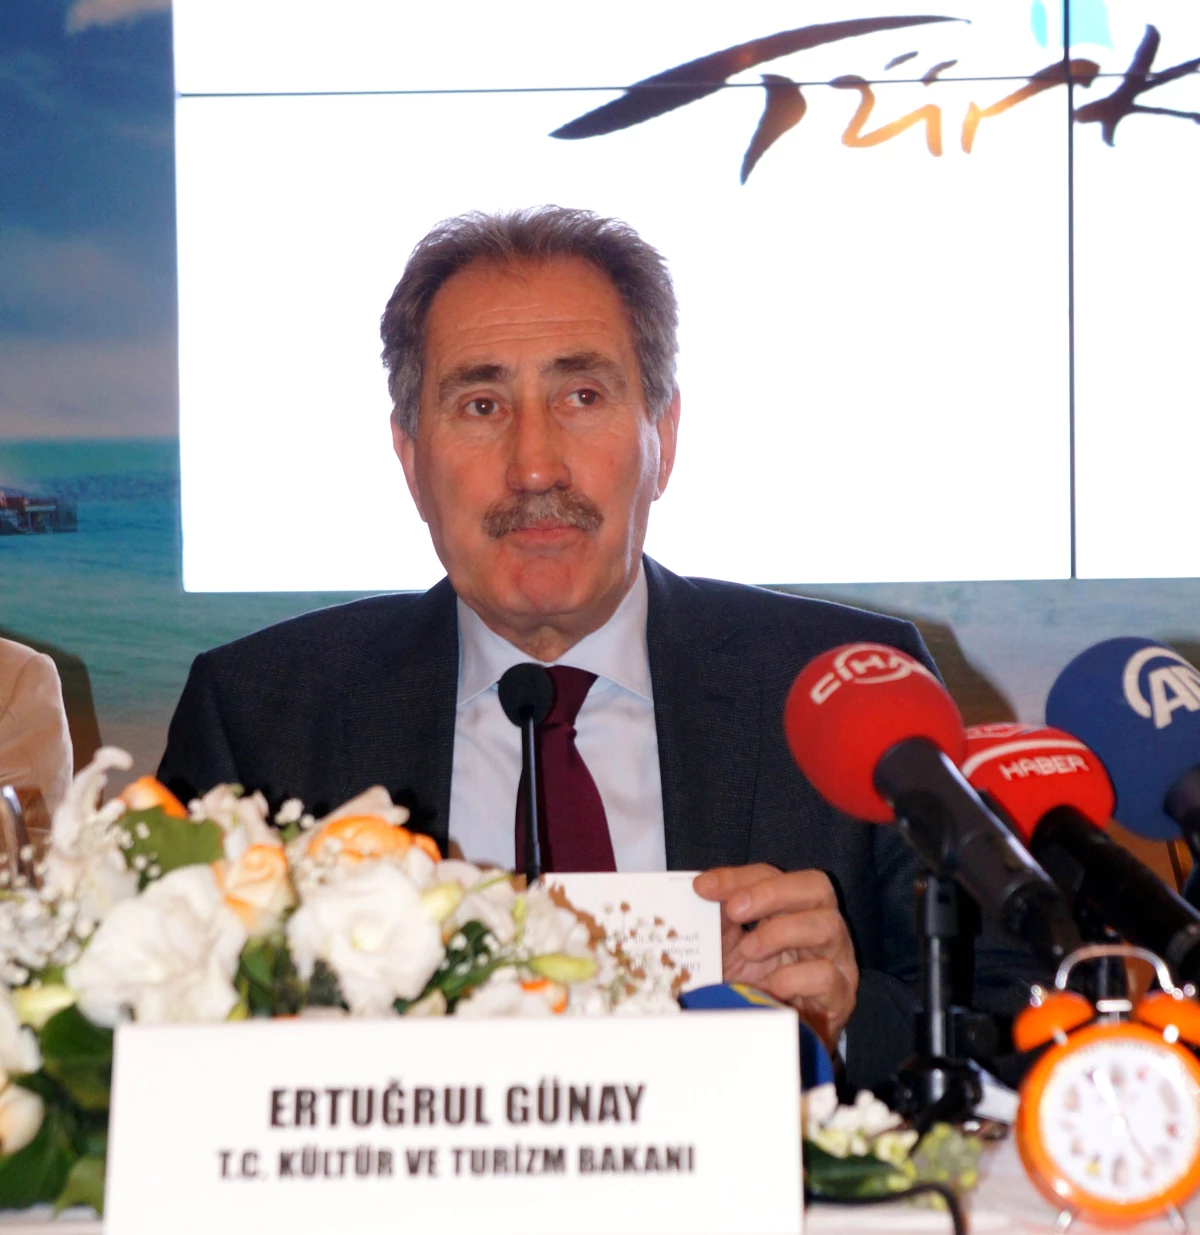 Kültür ve Turizm Bakanı Ertuğrul Günay Açıklaması